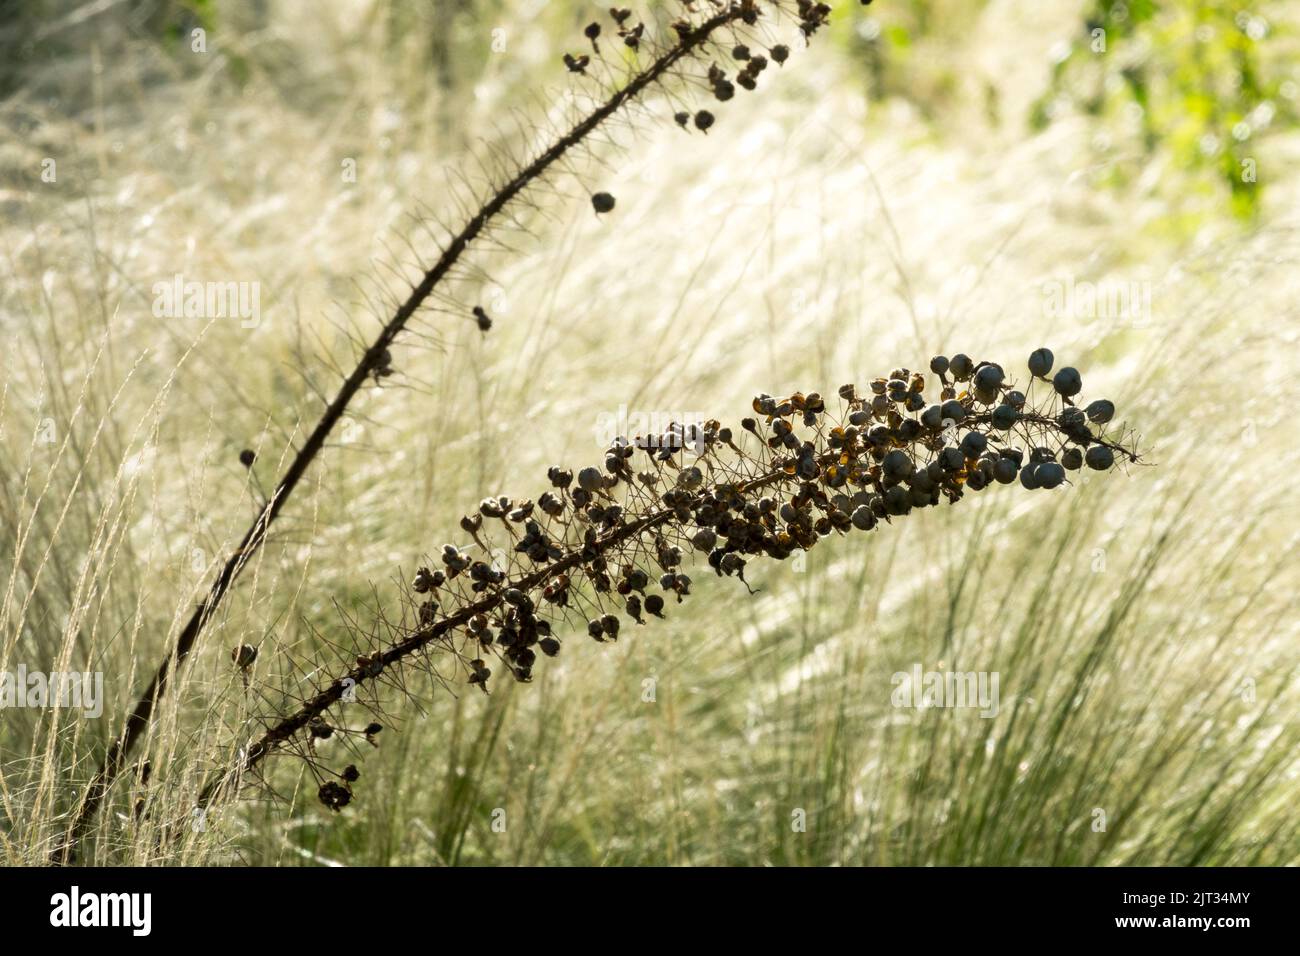 Wüstenkerze, Samenkopf, Fuchsenschwanz-Lilie, Samen, Eremurus, Hülsen reife Samenköpfe, Pferdeschwanz Gras Hintergrund Stockfoto